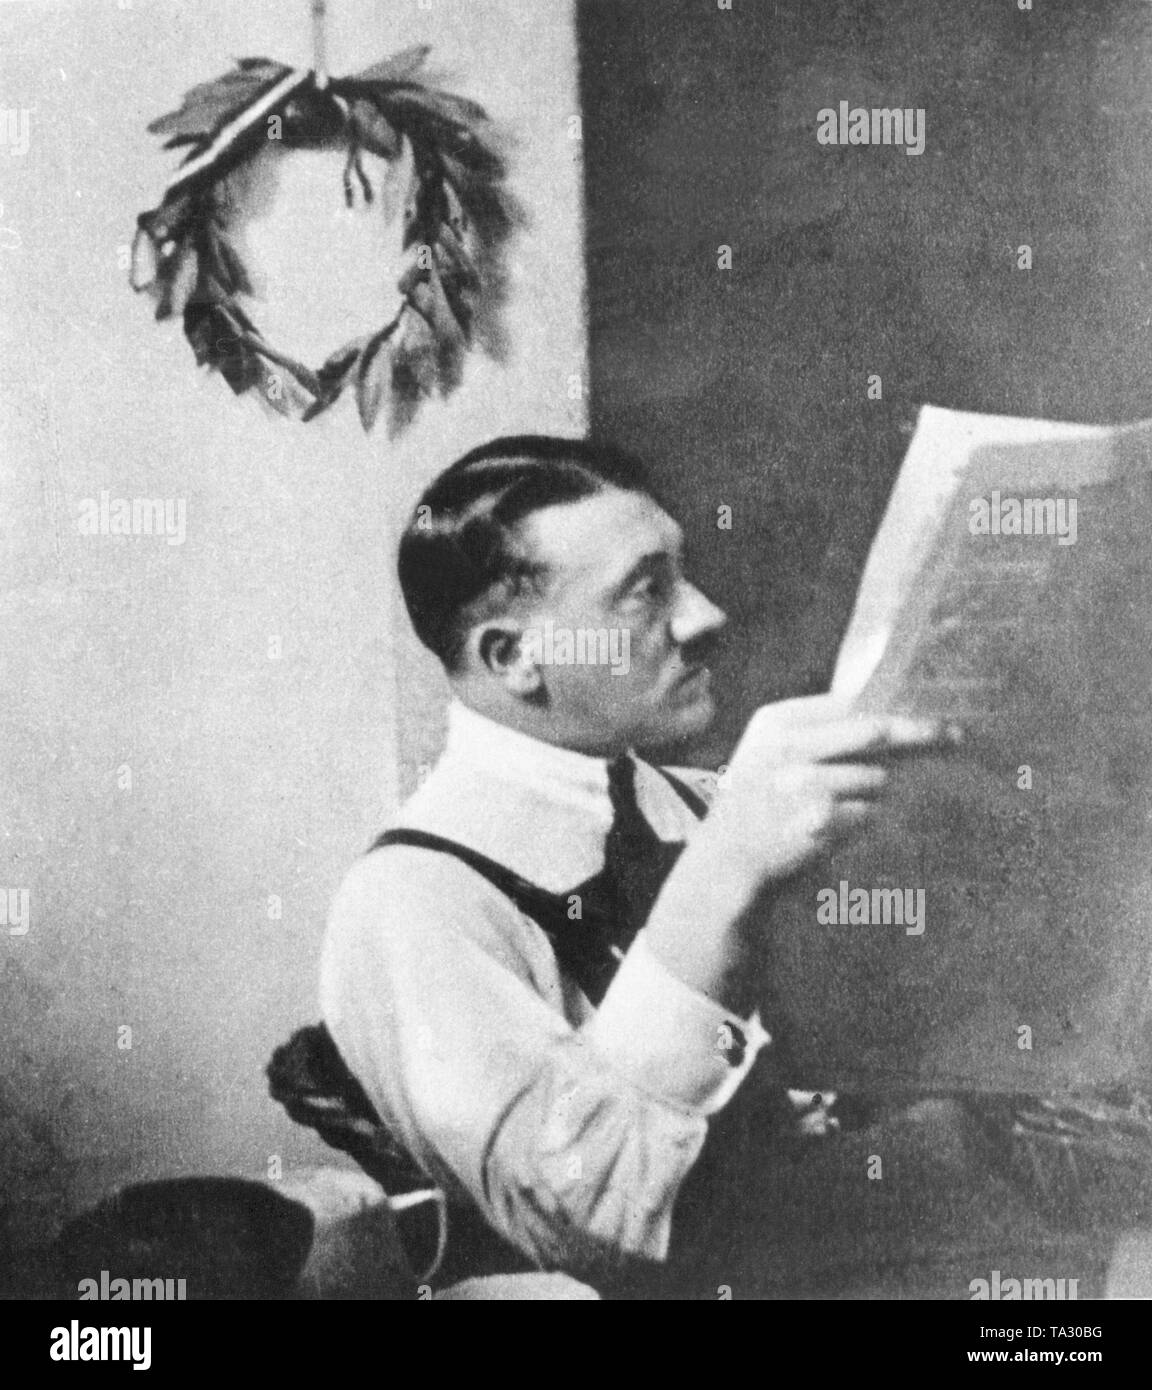 Adolf Hitler avec une couronne de laurier de l'antique gagnants, pleine de symbolisme, accroché au mur de sa cellule de la prison de Landsberg am Lech, où il a purgé sa peine peu après l'échec de la tentative de coup d'État le 9 novembre 1923 à Munich. Banque D'Images